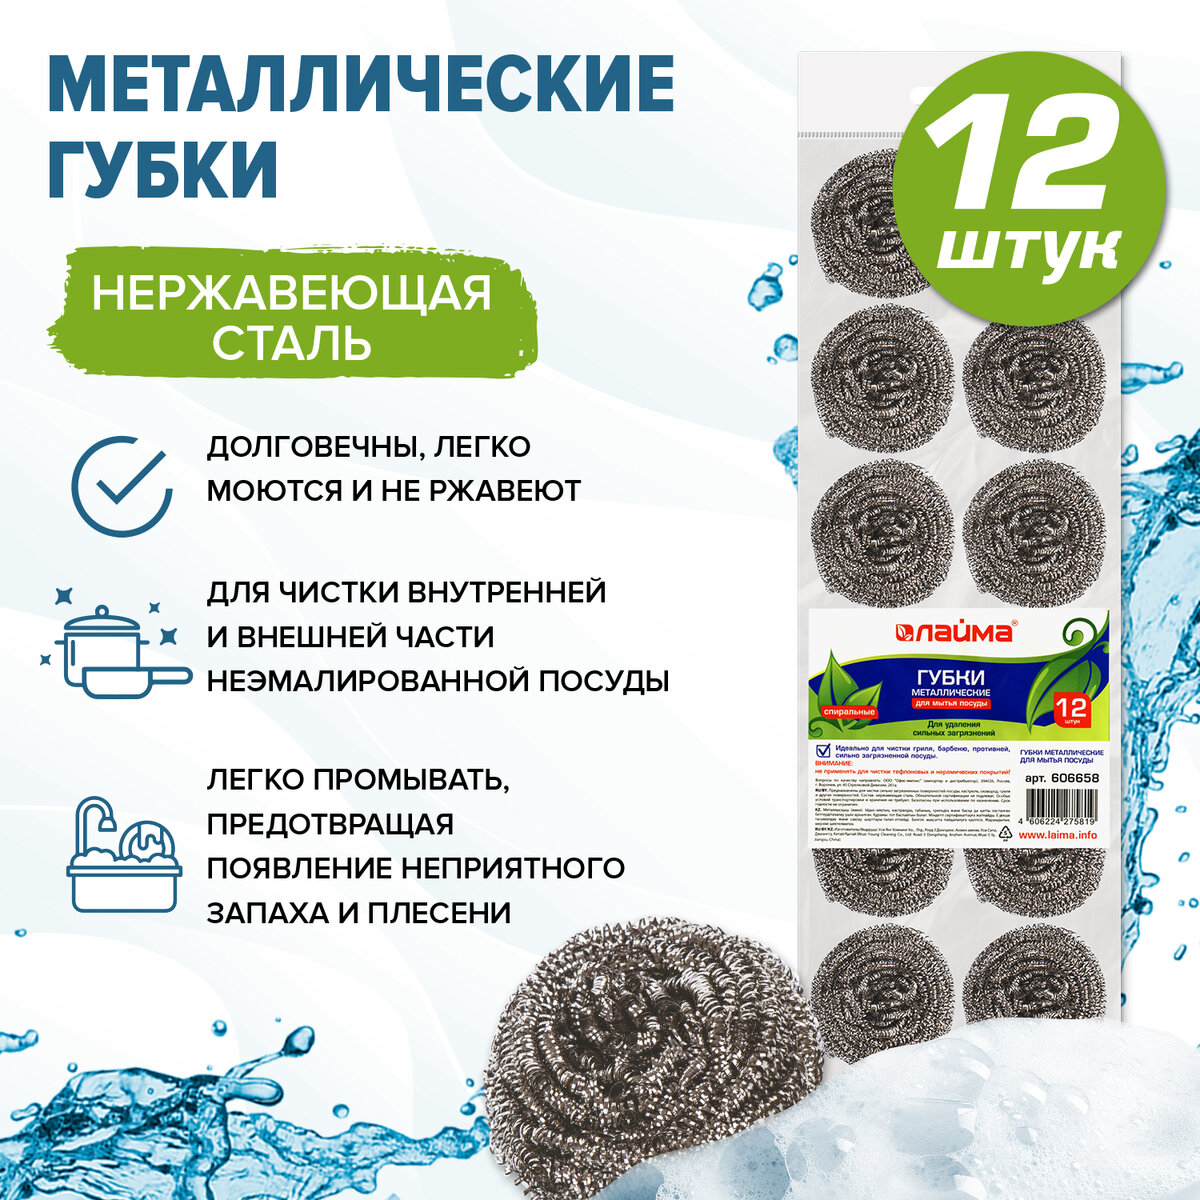 Губки (мочалки) для посуды металлические LAIMA, КОМПЛЕКТ 12шт., спиральные по 15 г